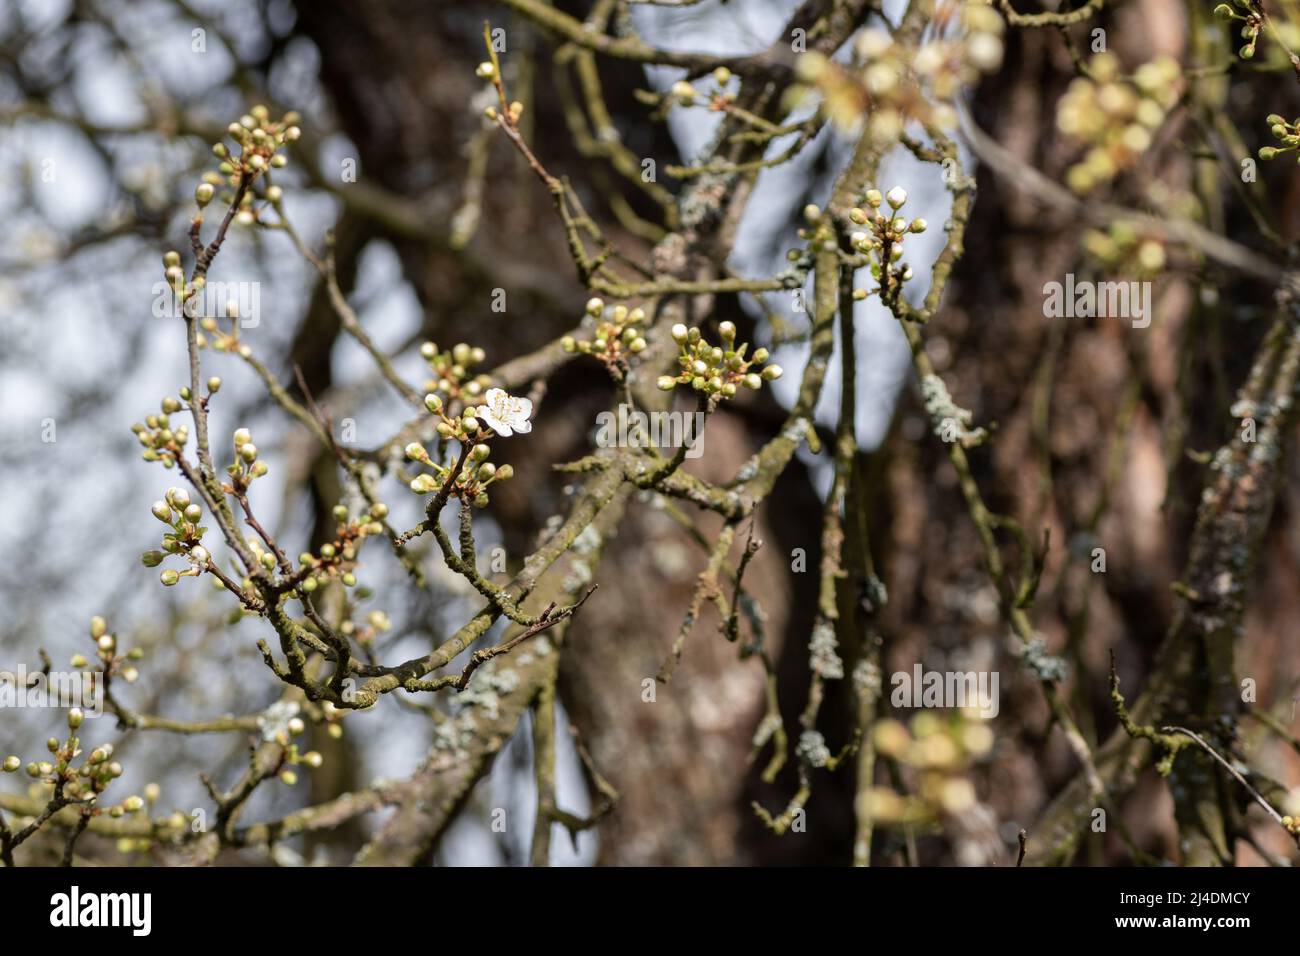 Close up of cherry plum or myrobalan plum, prunus cerasifera, tree flowers during sunny spring day Stock Photo